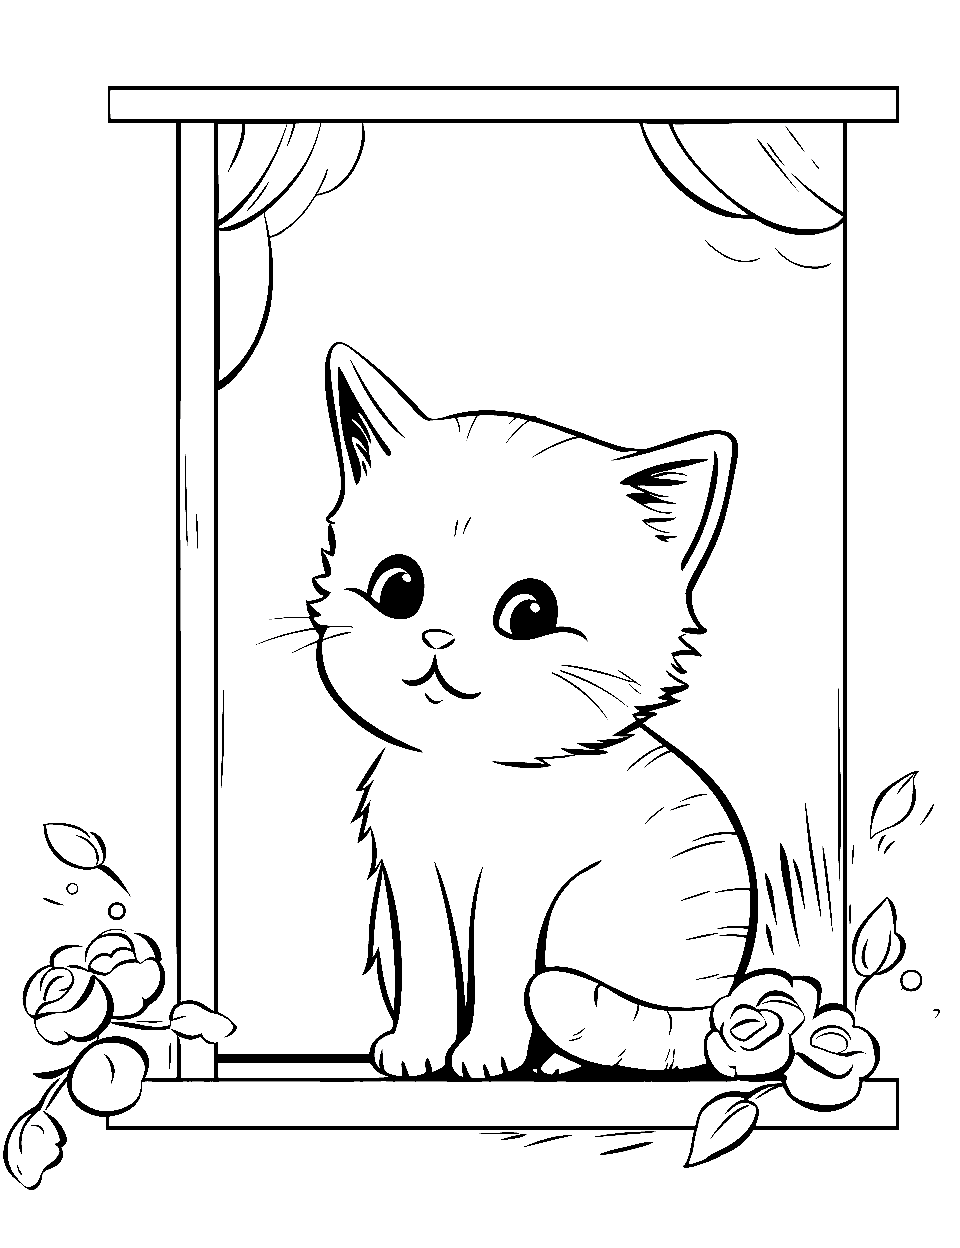 Little Kitten's Daydream Kitten Coloring Page - A little kitten sitting on a window, daydreaming.